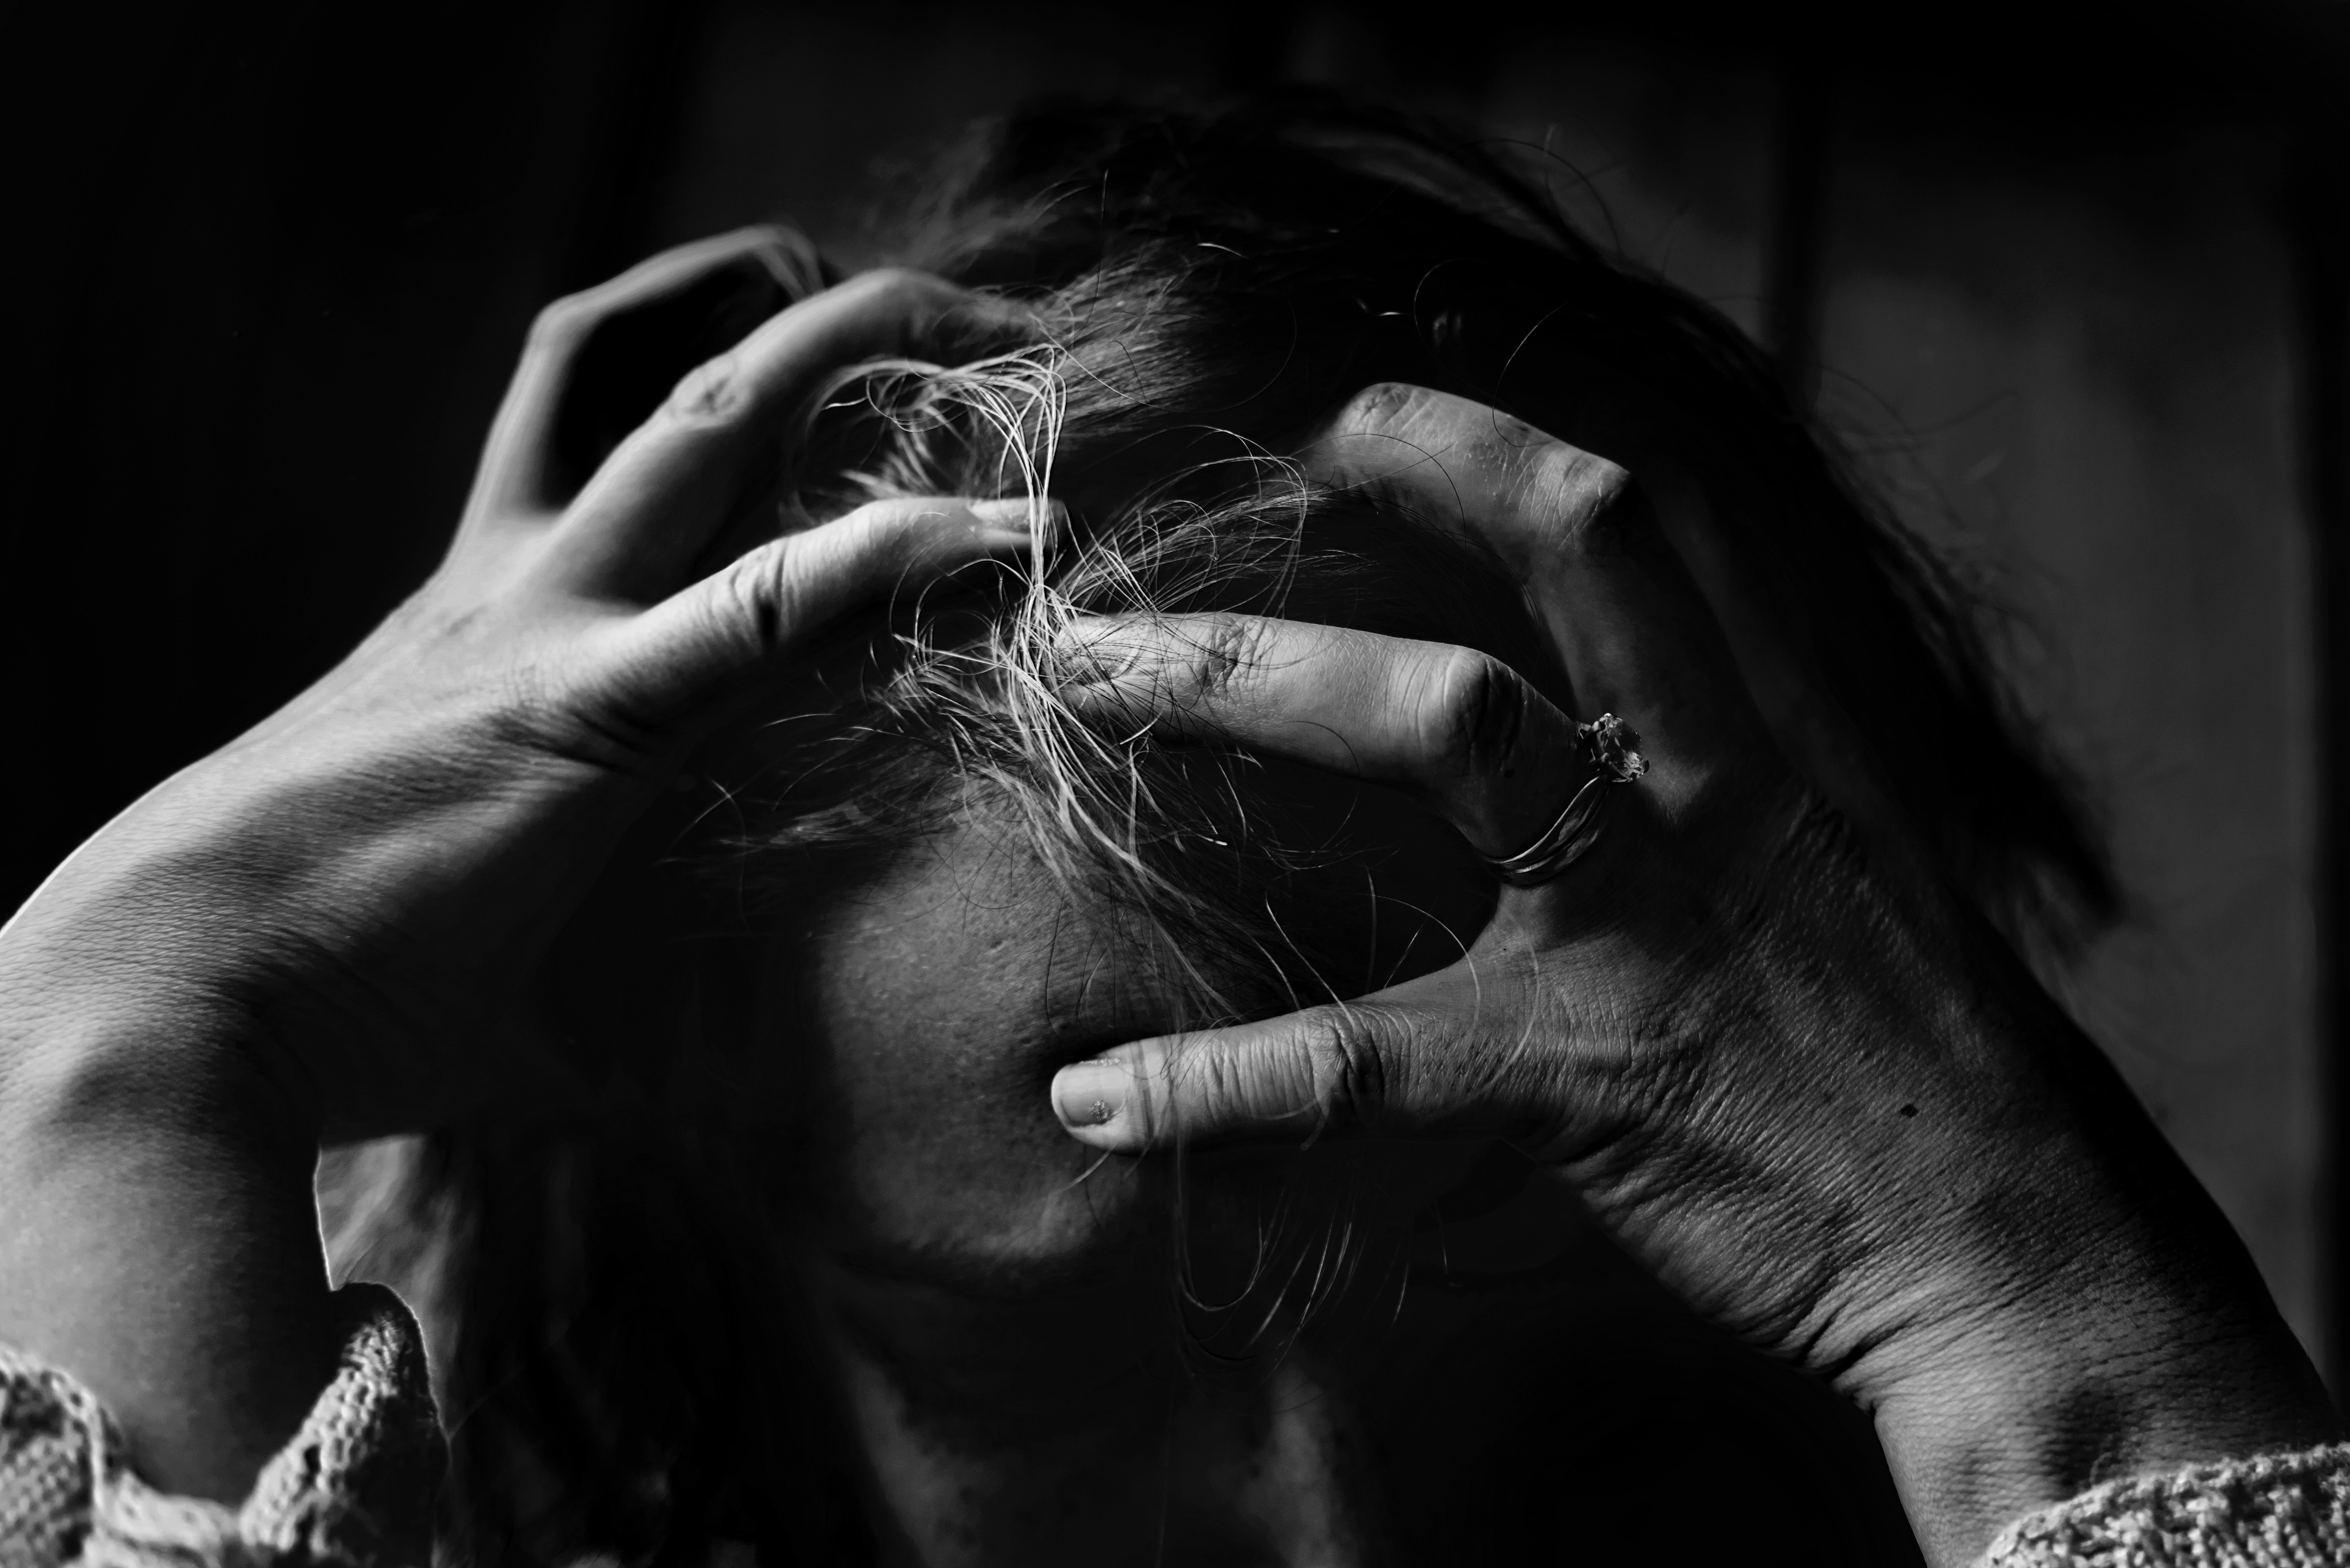 Imágen en blanco y negro de una persona desesperada. | Foto: Pexels